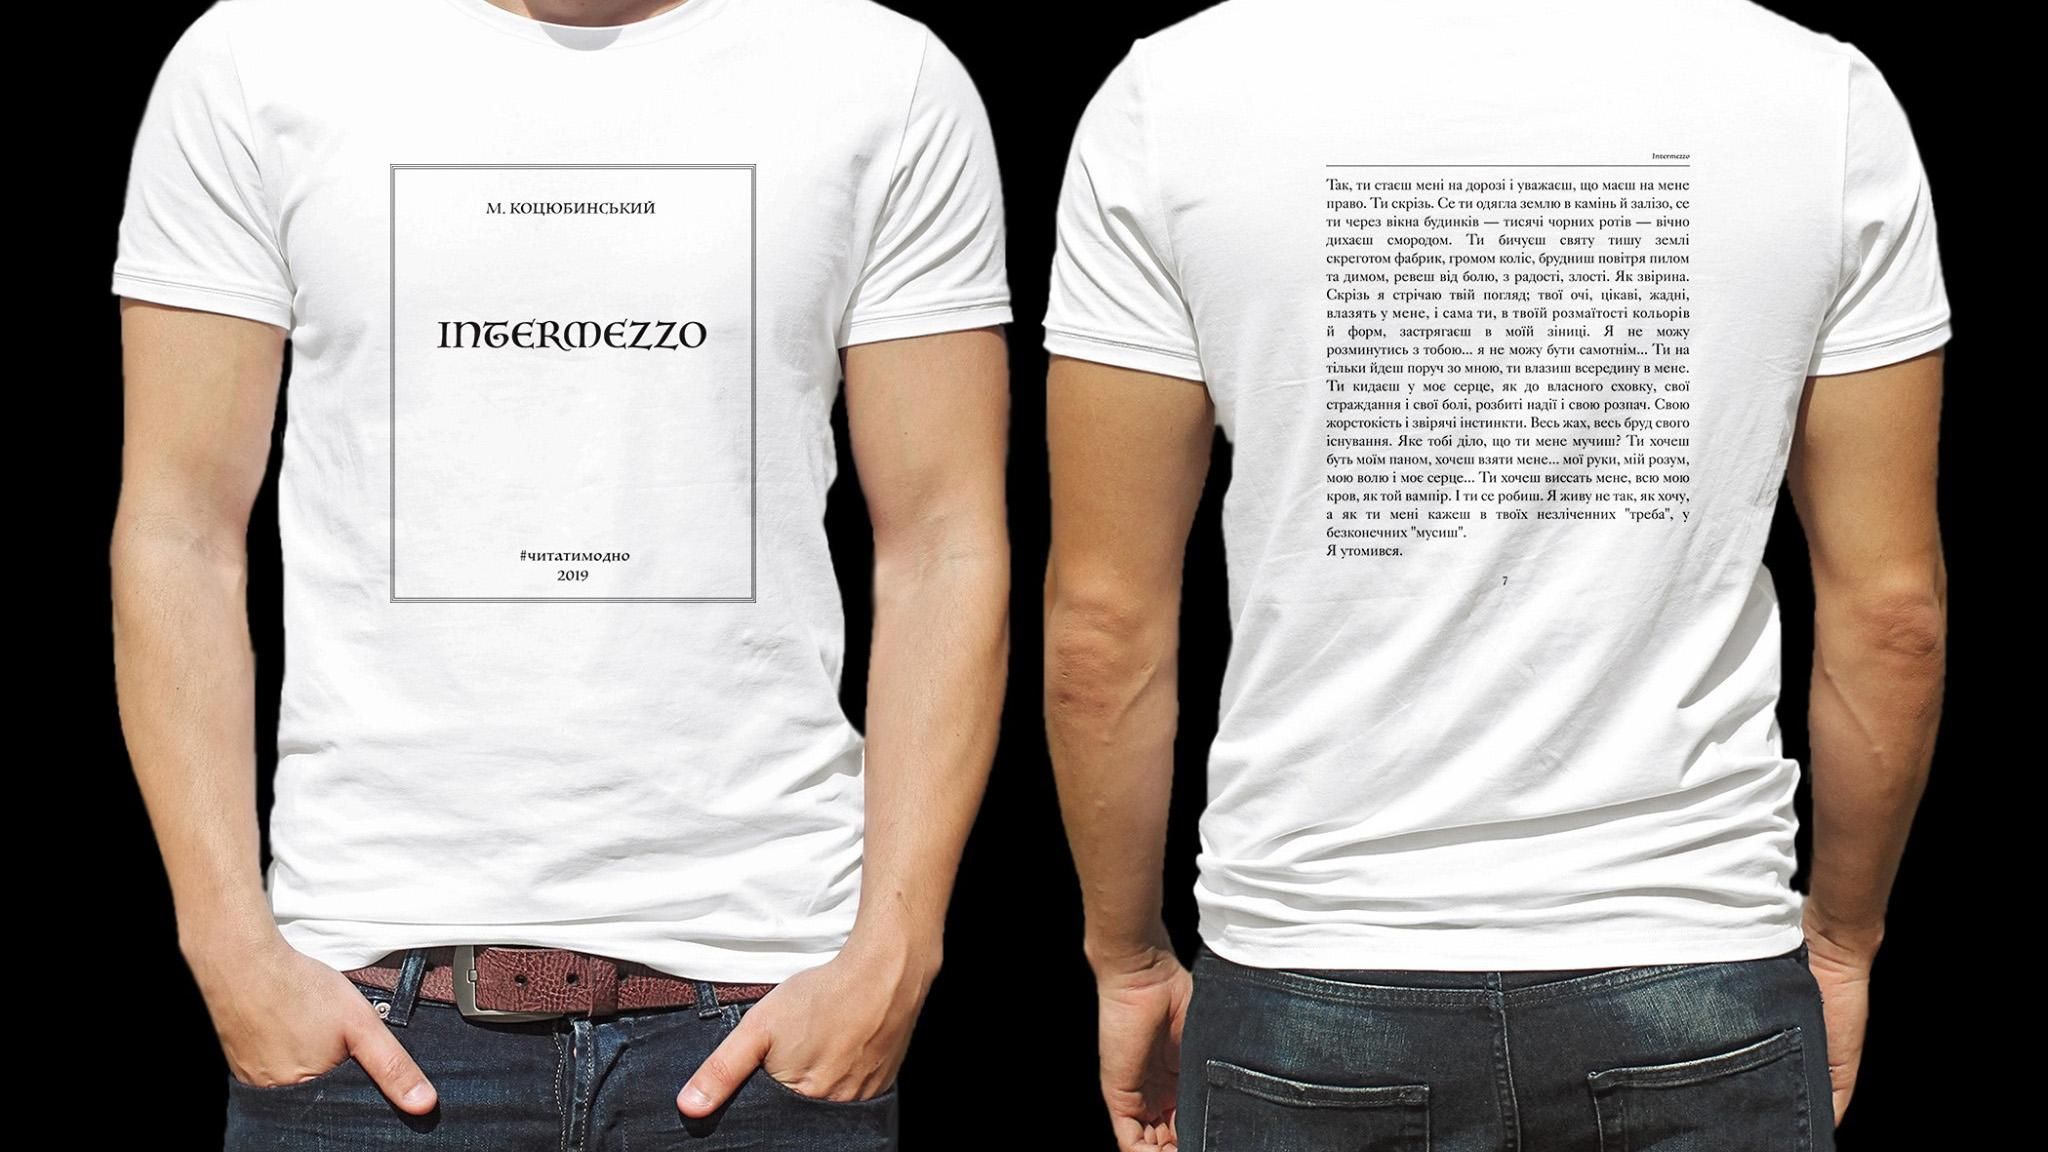 Підстав плече – я почитаю: киянка випустила круті футболки з текстами українських письменників